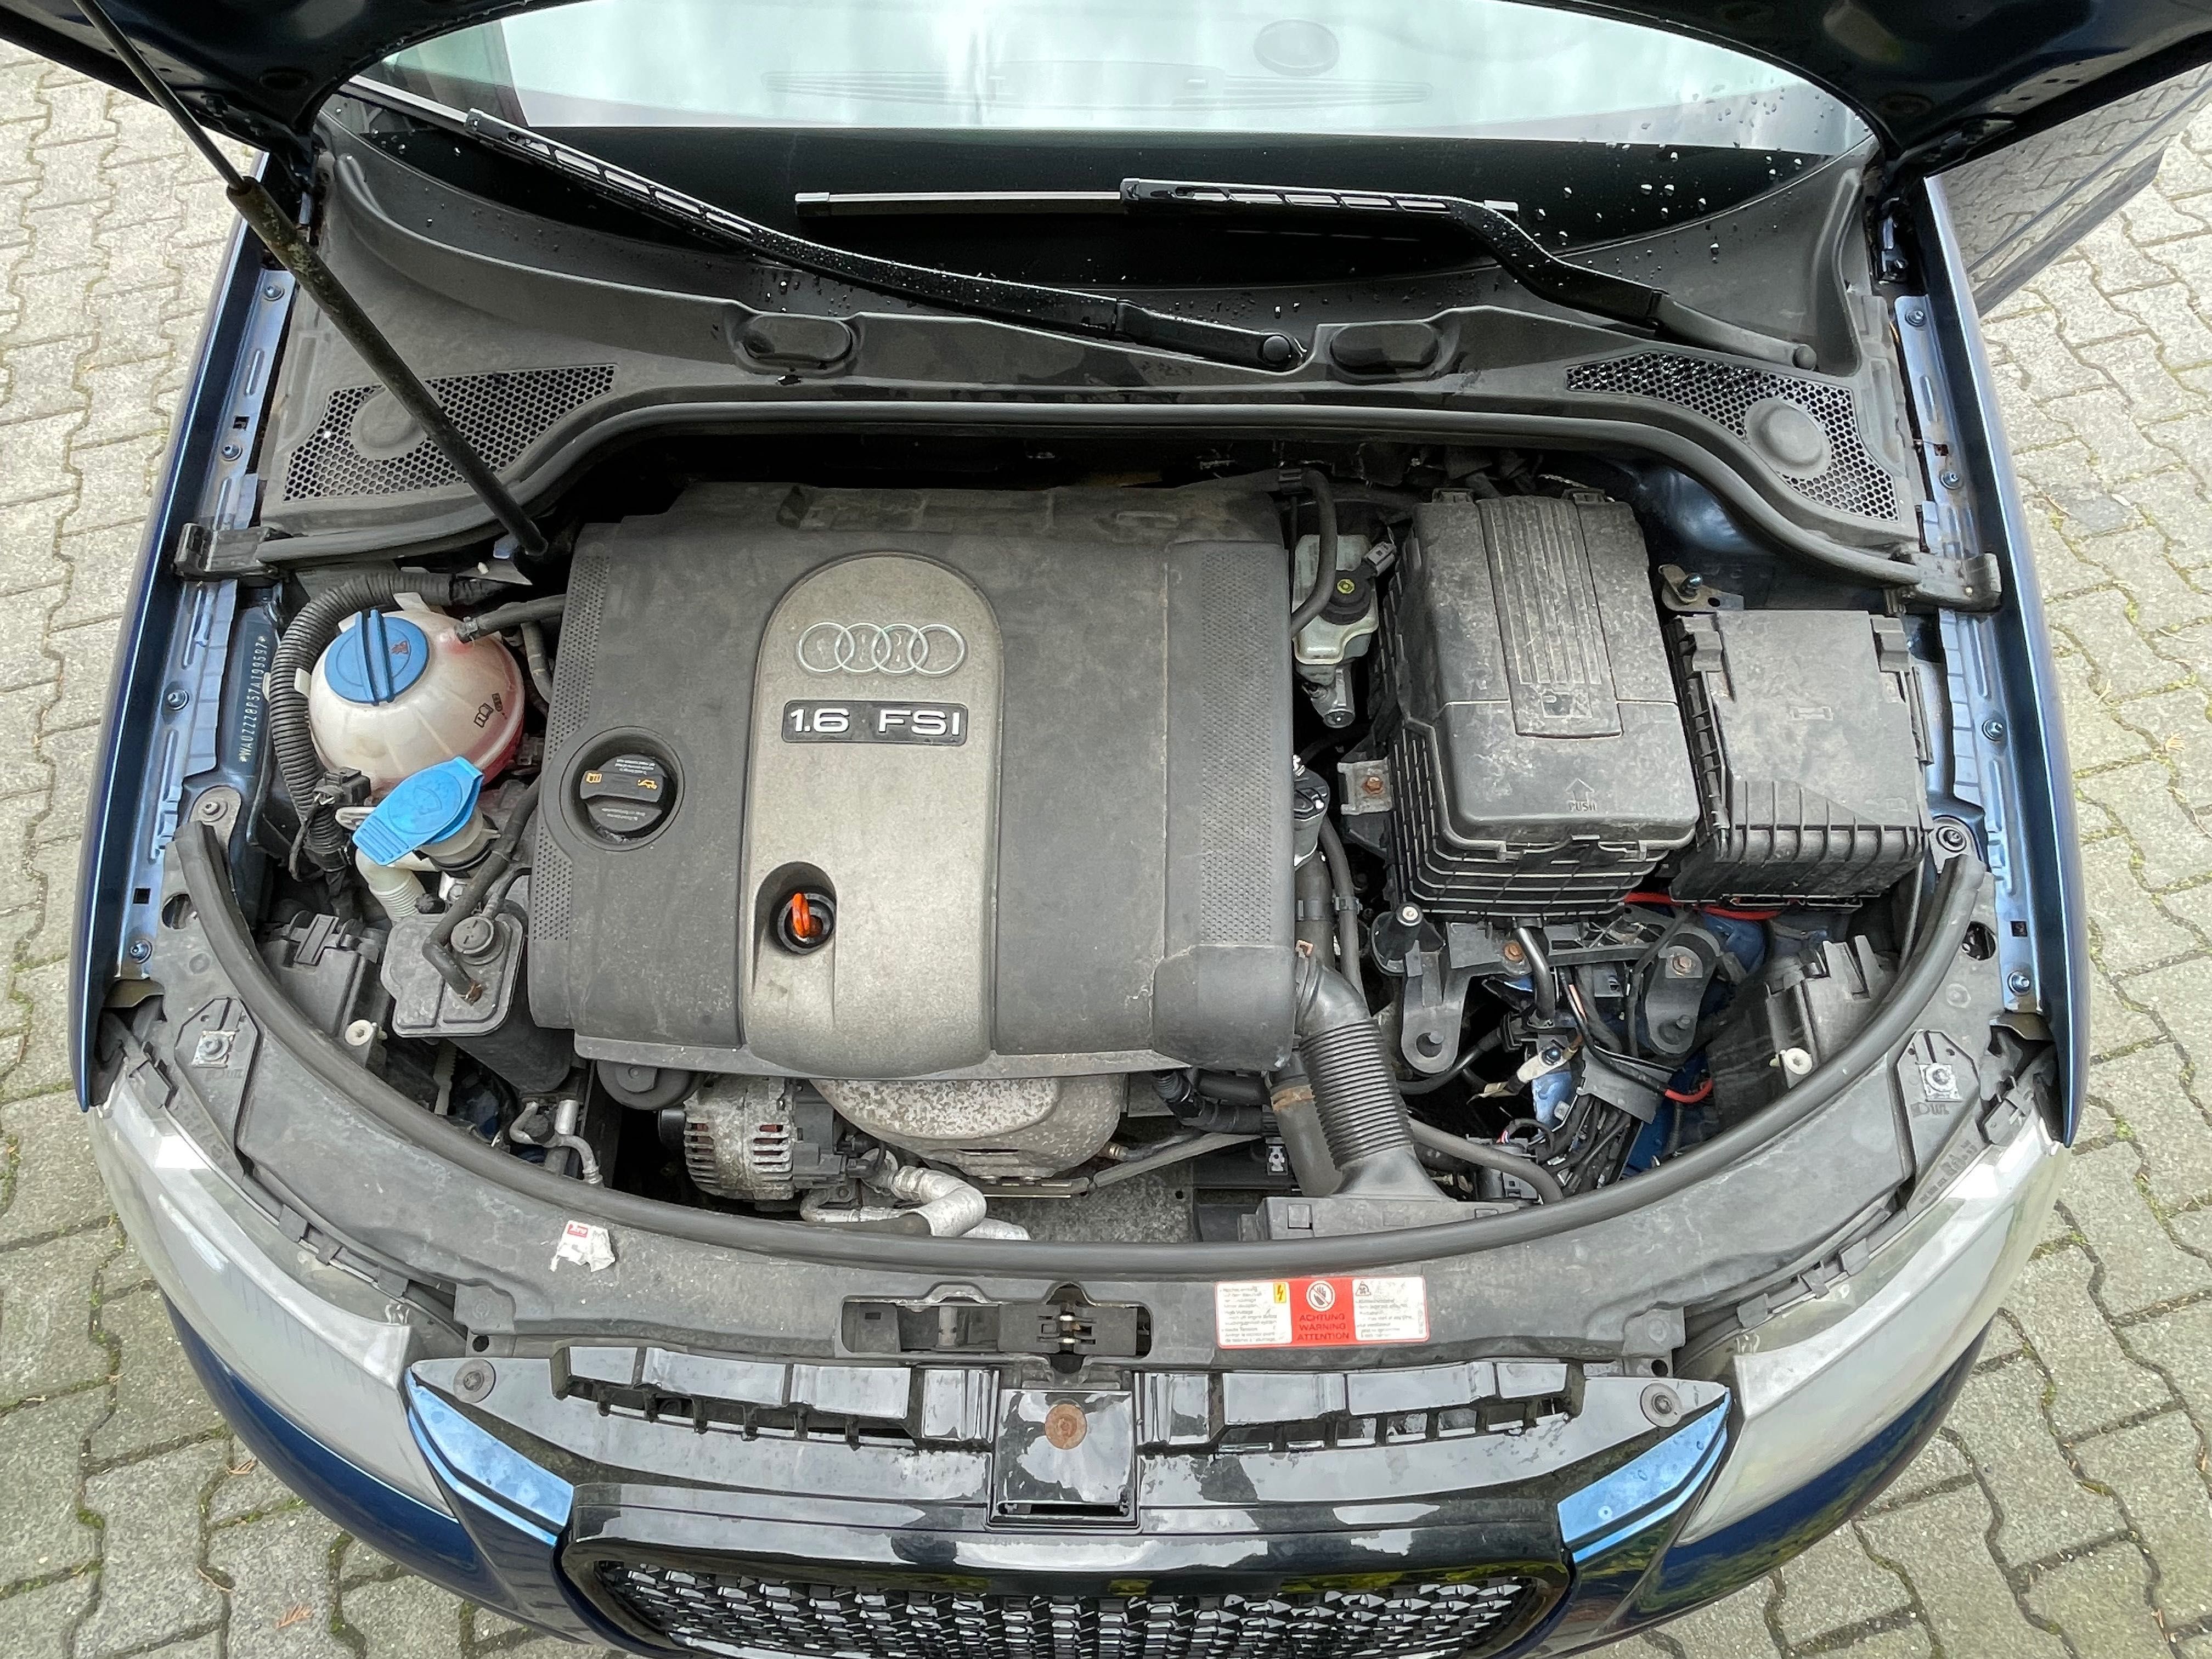 Sprzedam Audi A3 Sportback z 2007r 1.6 benzyna 115KM